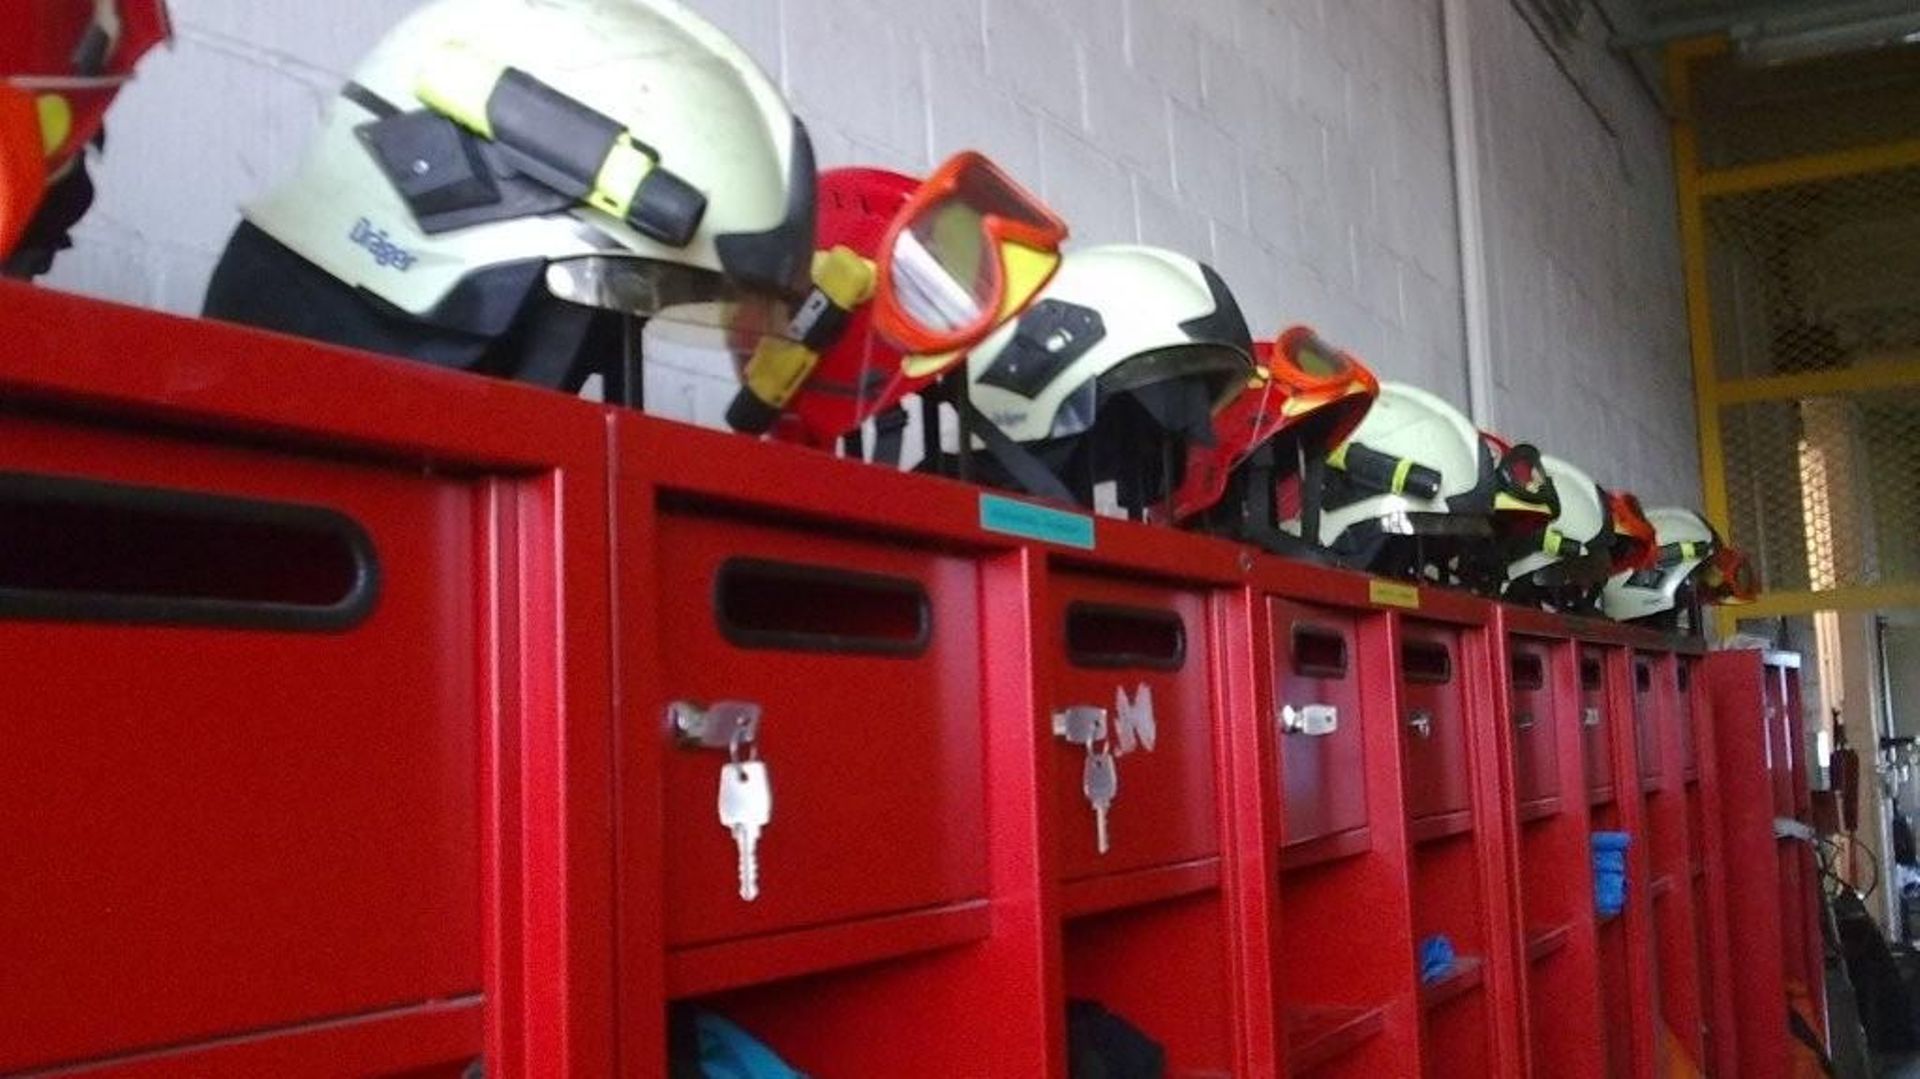 La zone d'incendie Dinaphi (Dinant-Philippeville) se prépare à la réforme des services incendie